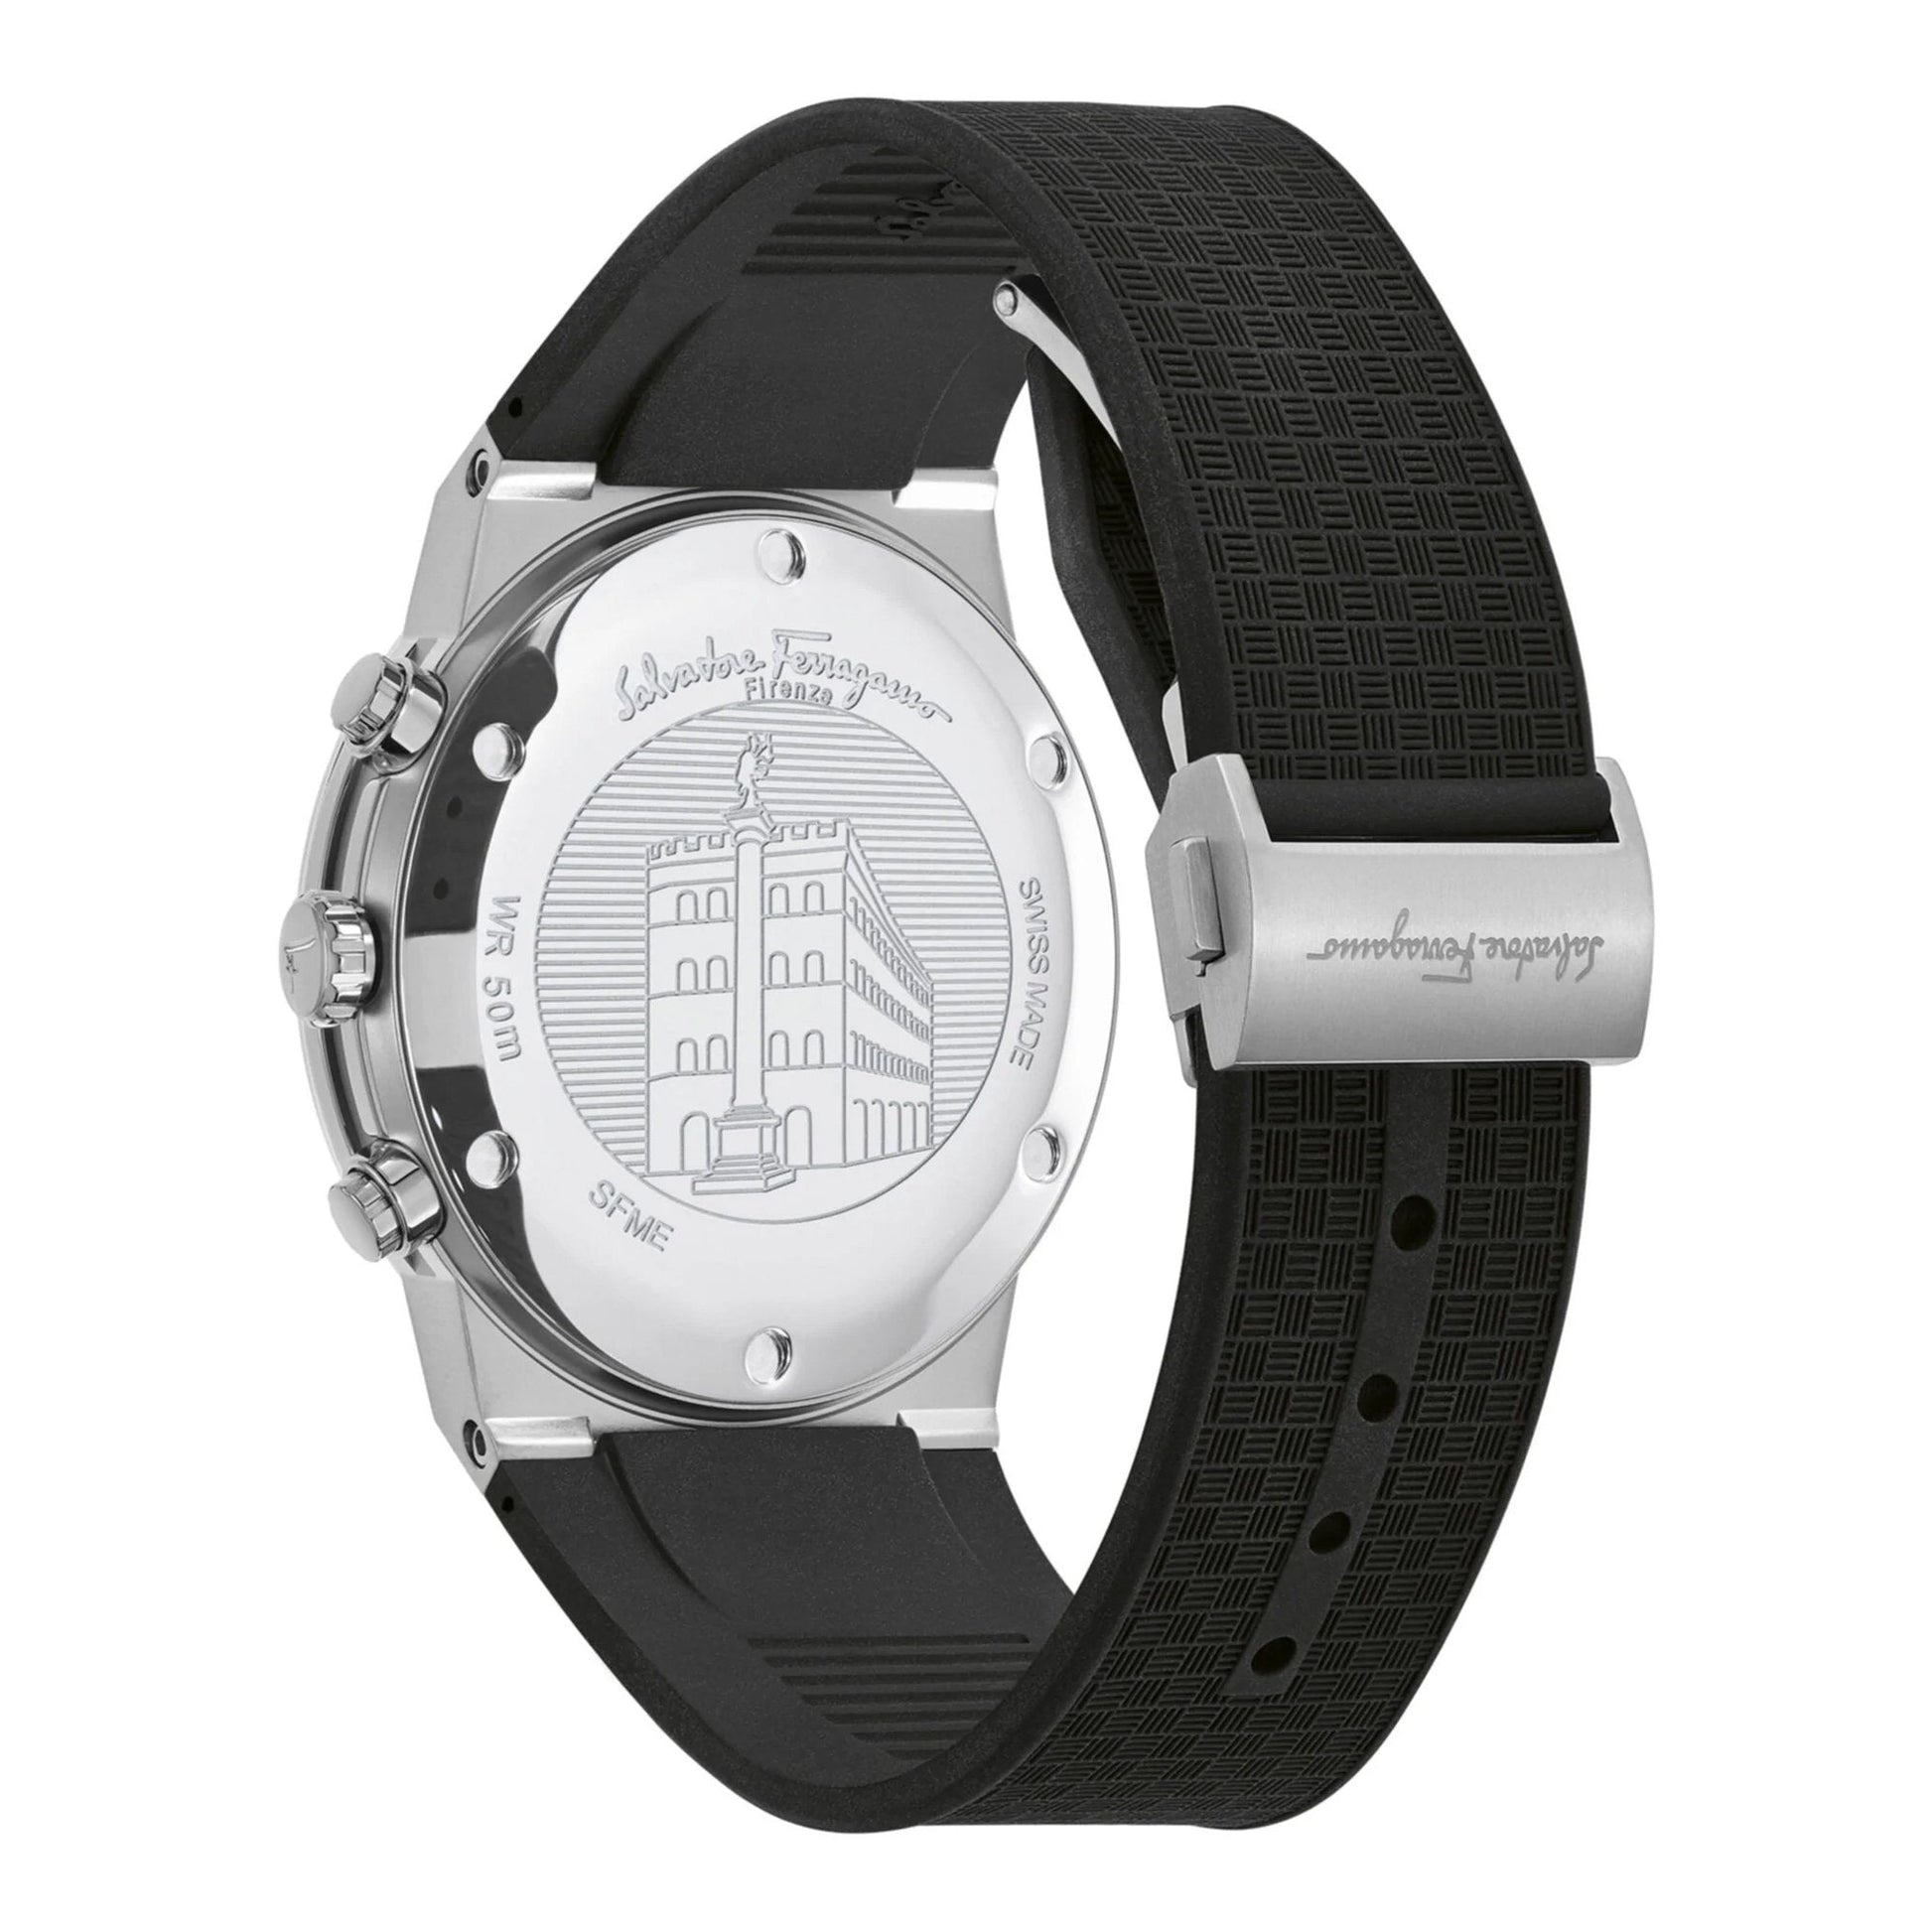 Salvatore Ferragamo Sapphire Chronograph Black Dial Black Silicone Strap Watch for Men - SFME00121